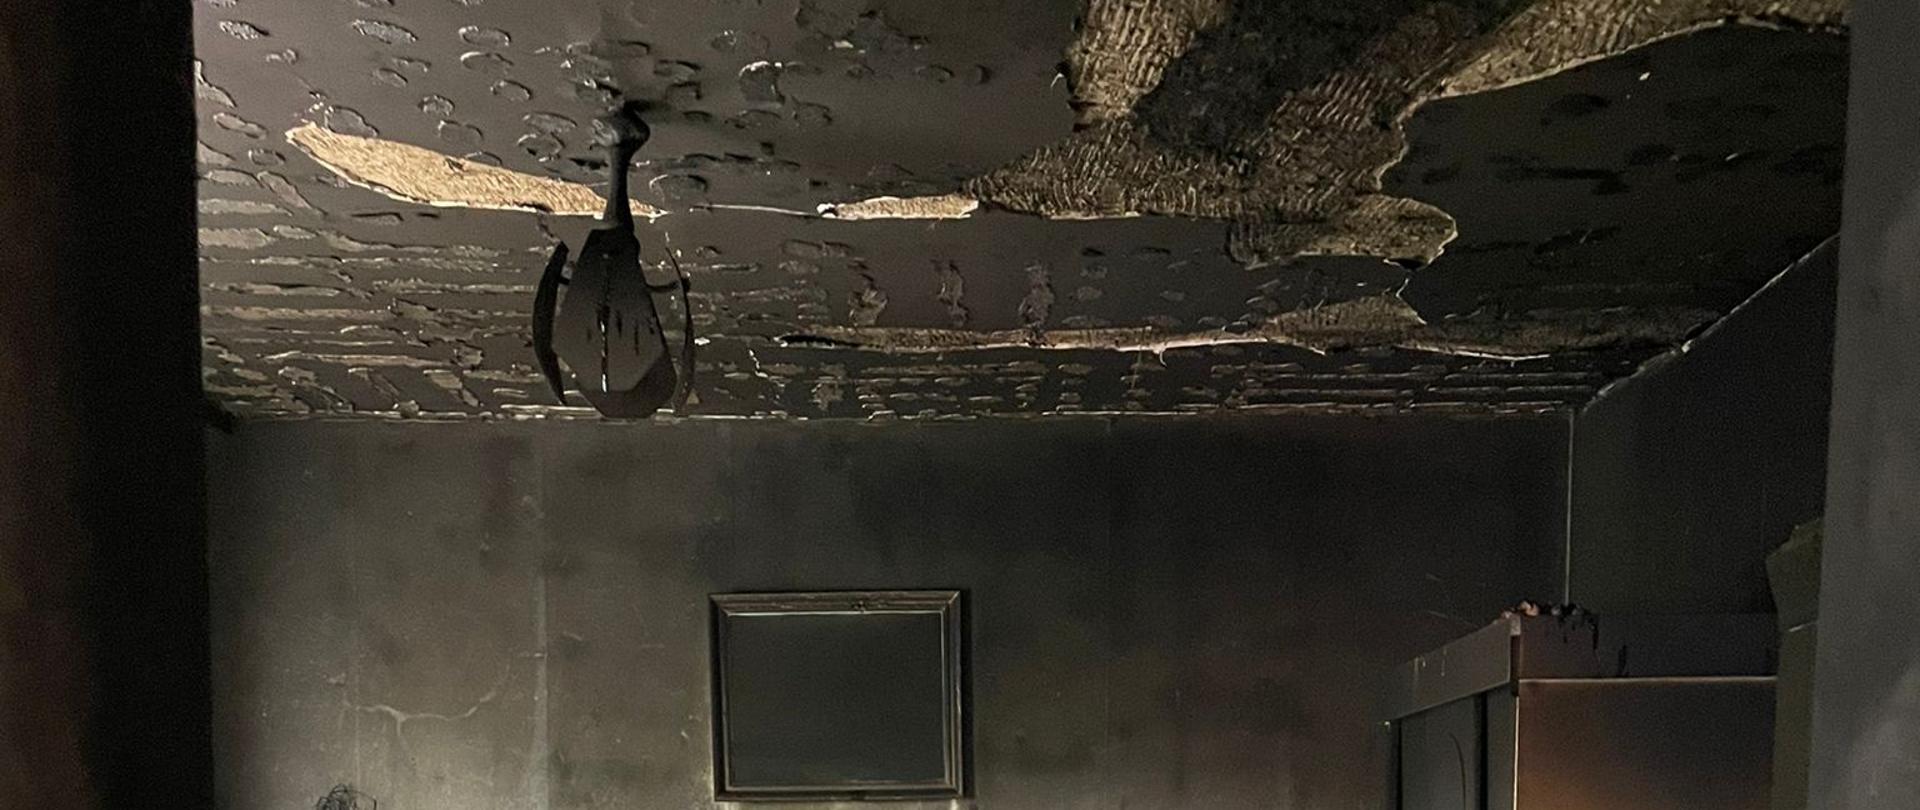 Jedno z pomieszczeń mieszkania w którym powstał pożar. Na suficie spaliły się kasetony, ściany zostały pokryte sadzą, nadpalone meble od góry. 